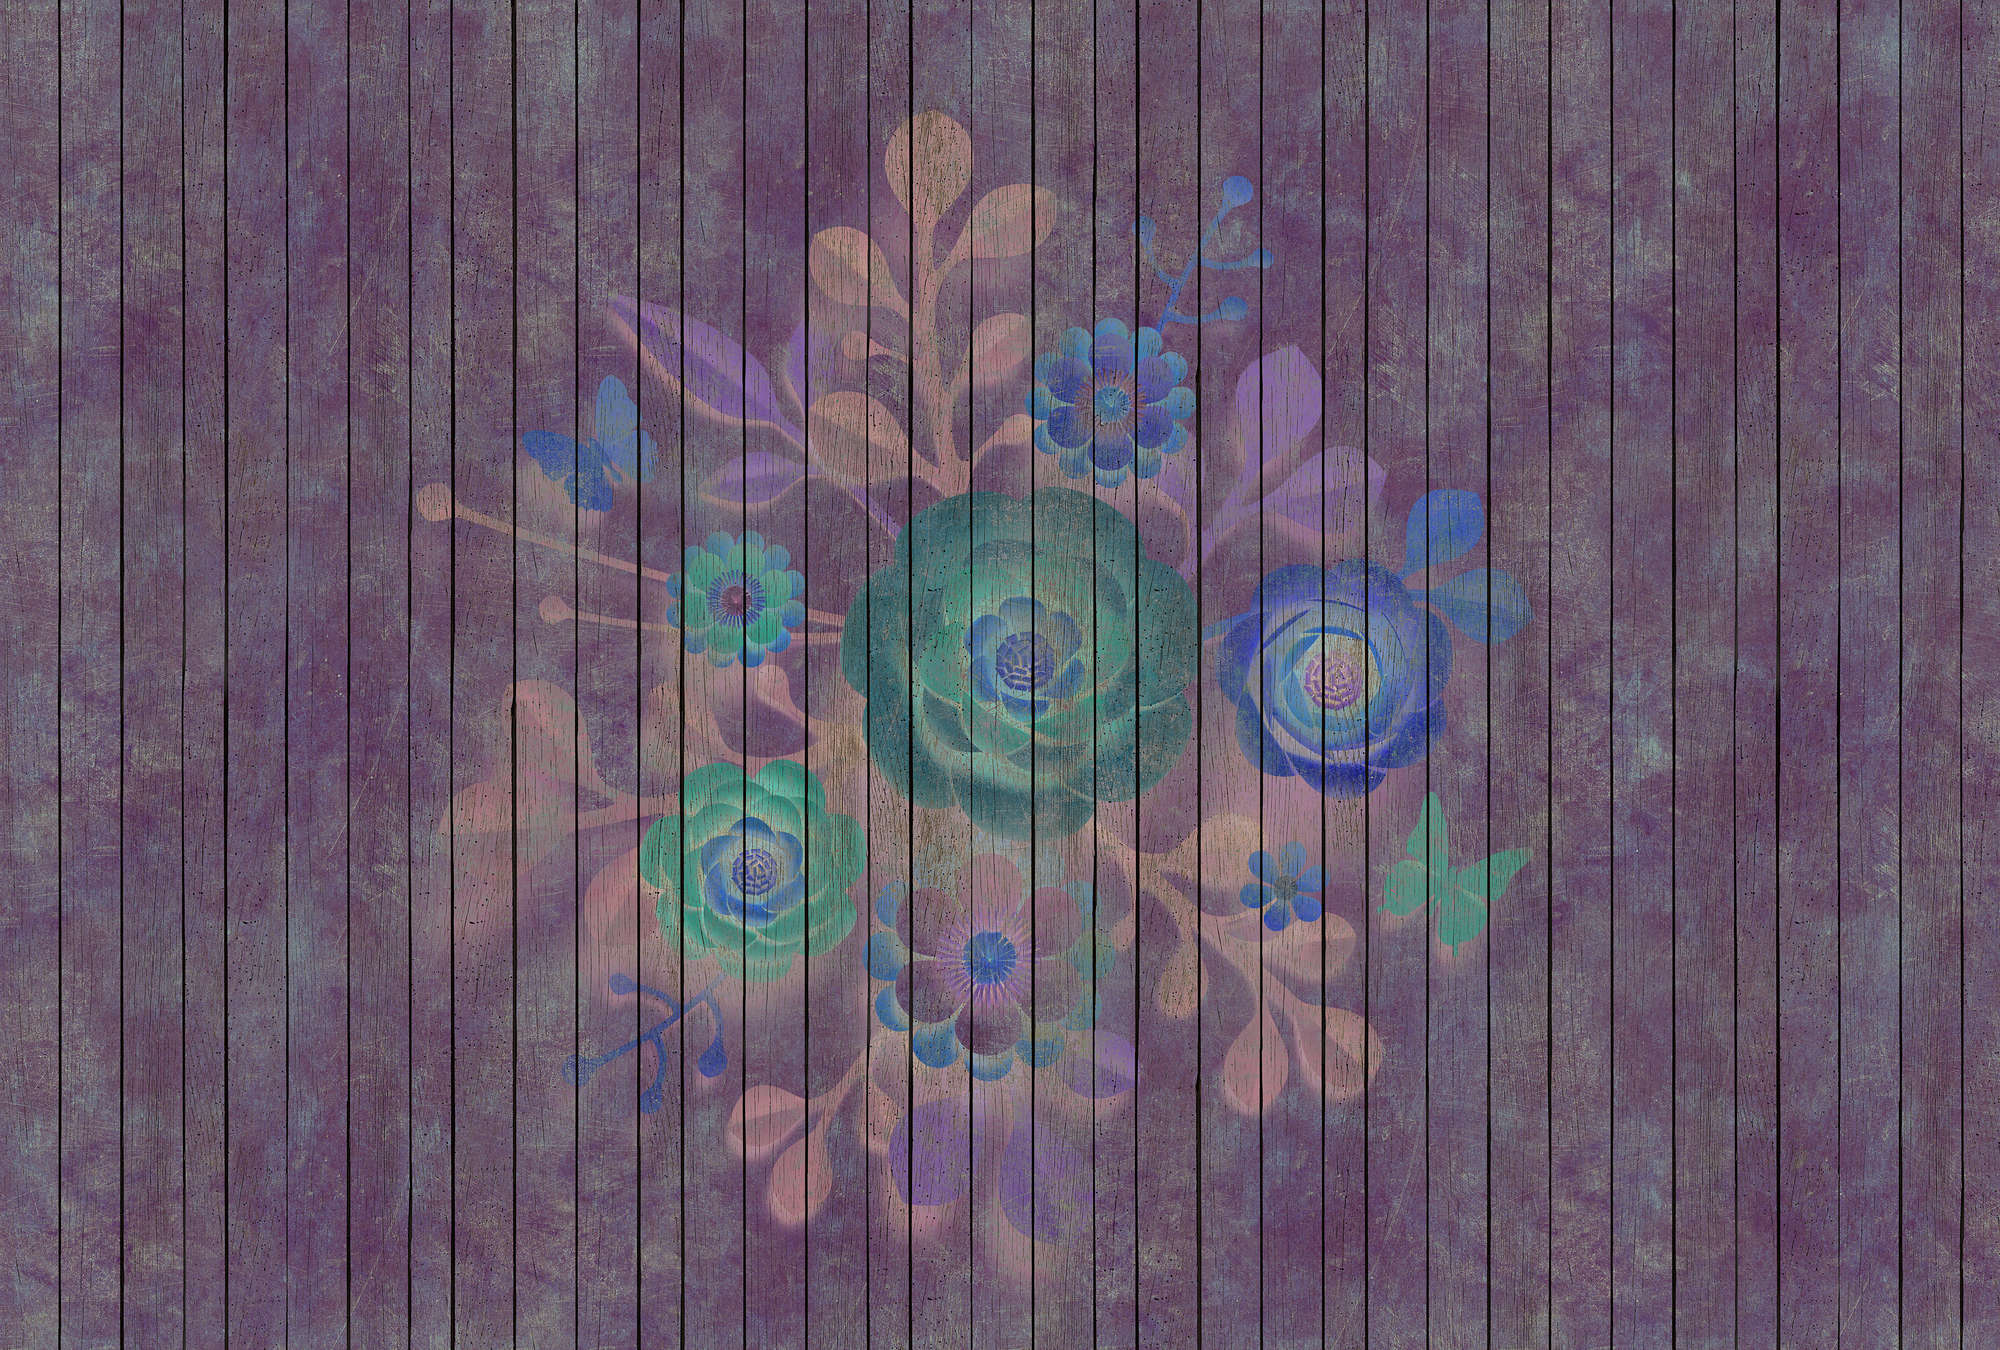             Sproeiboeket 1 - Digital behang met bloemen op bordwand - Houten panelen breed - Blauw, Groen | Parelmoervlies
        